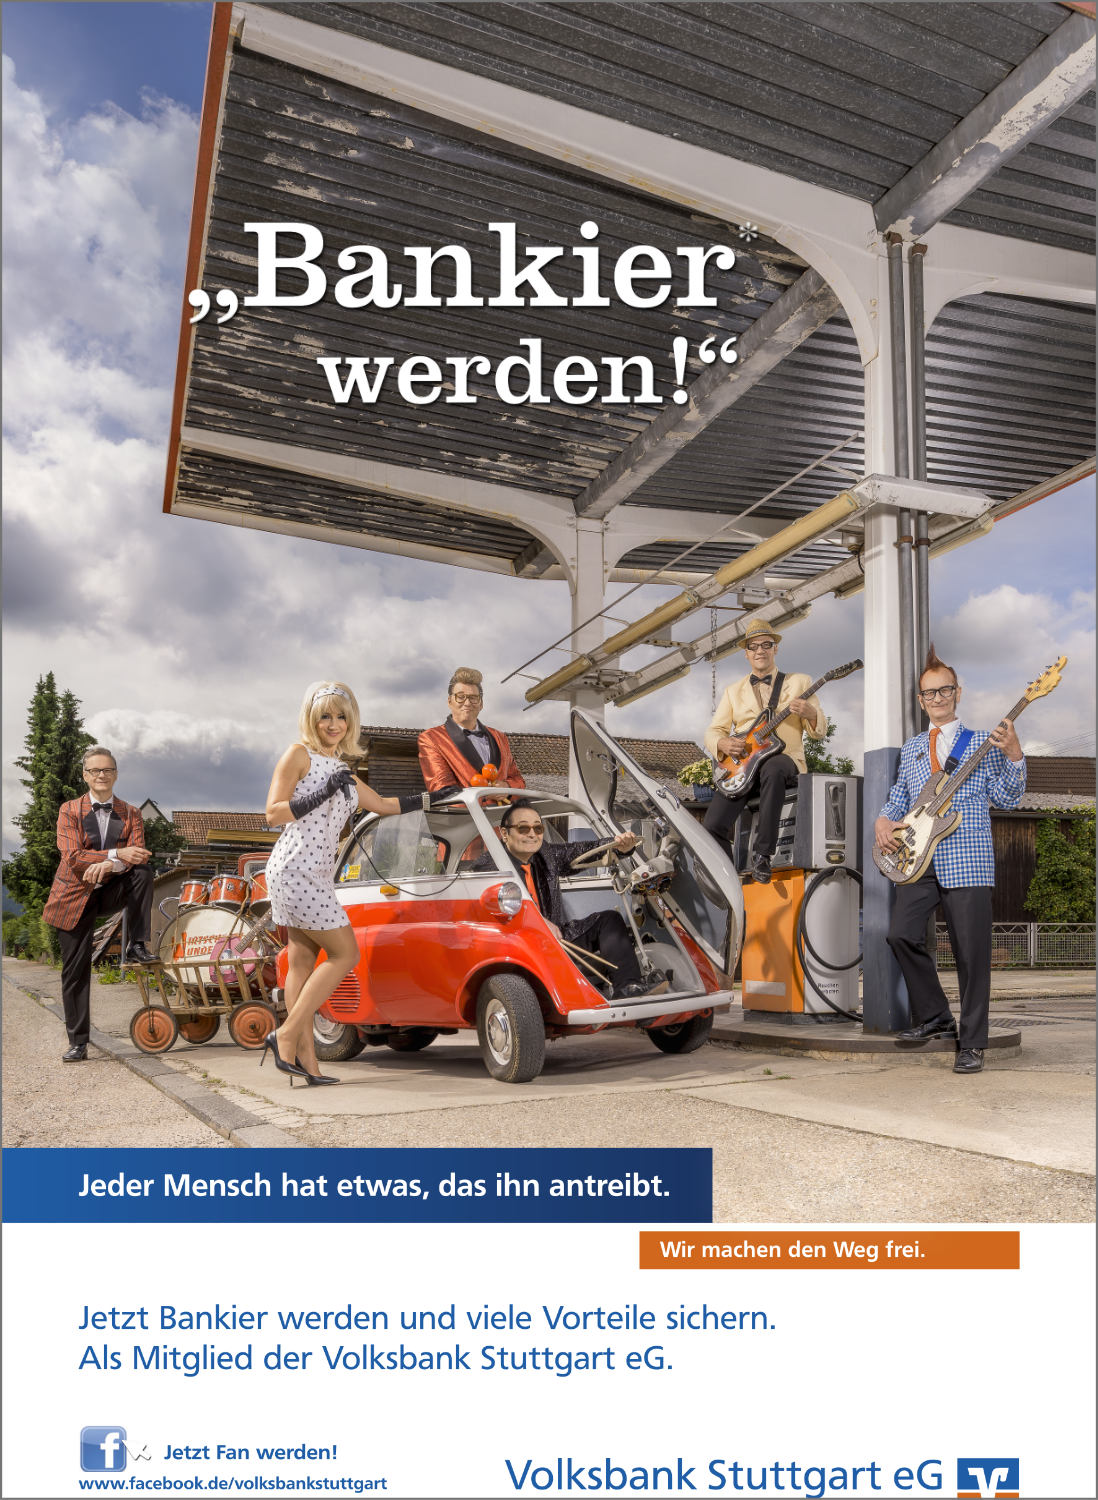 Imagefotografie Werbefotografie Kampagnenfotografie Volksbank Stuttgart eG Bankier Kampagne Bankier werden Tankstelle Band Musik Coverband 70er Wirtschaftswunder